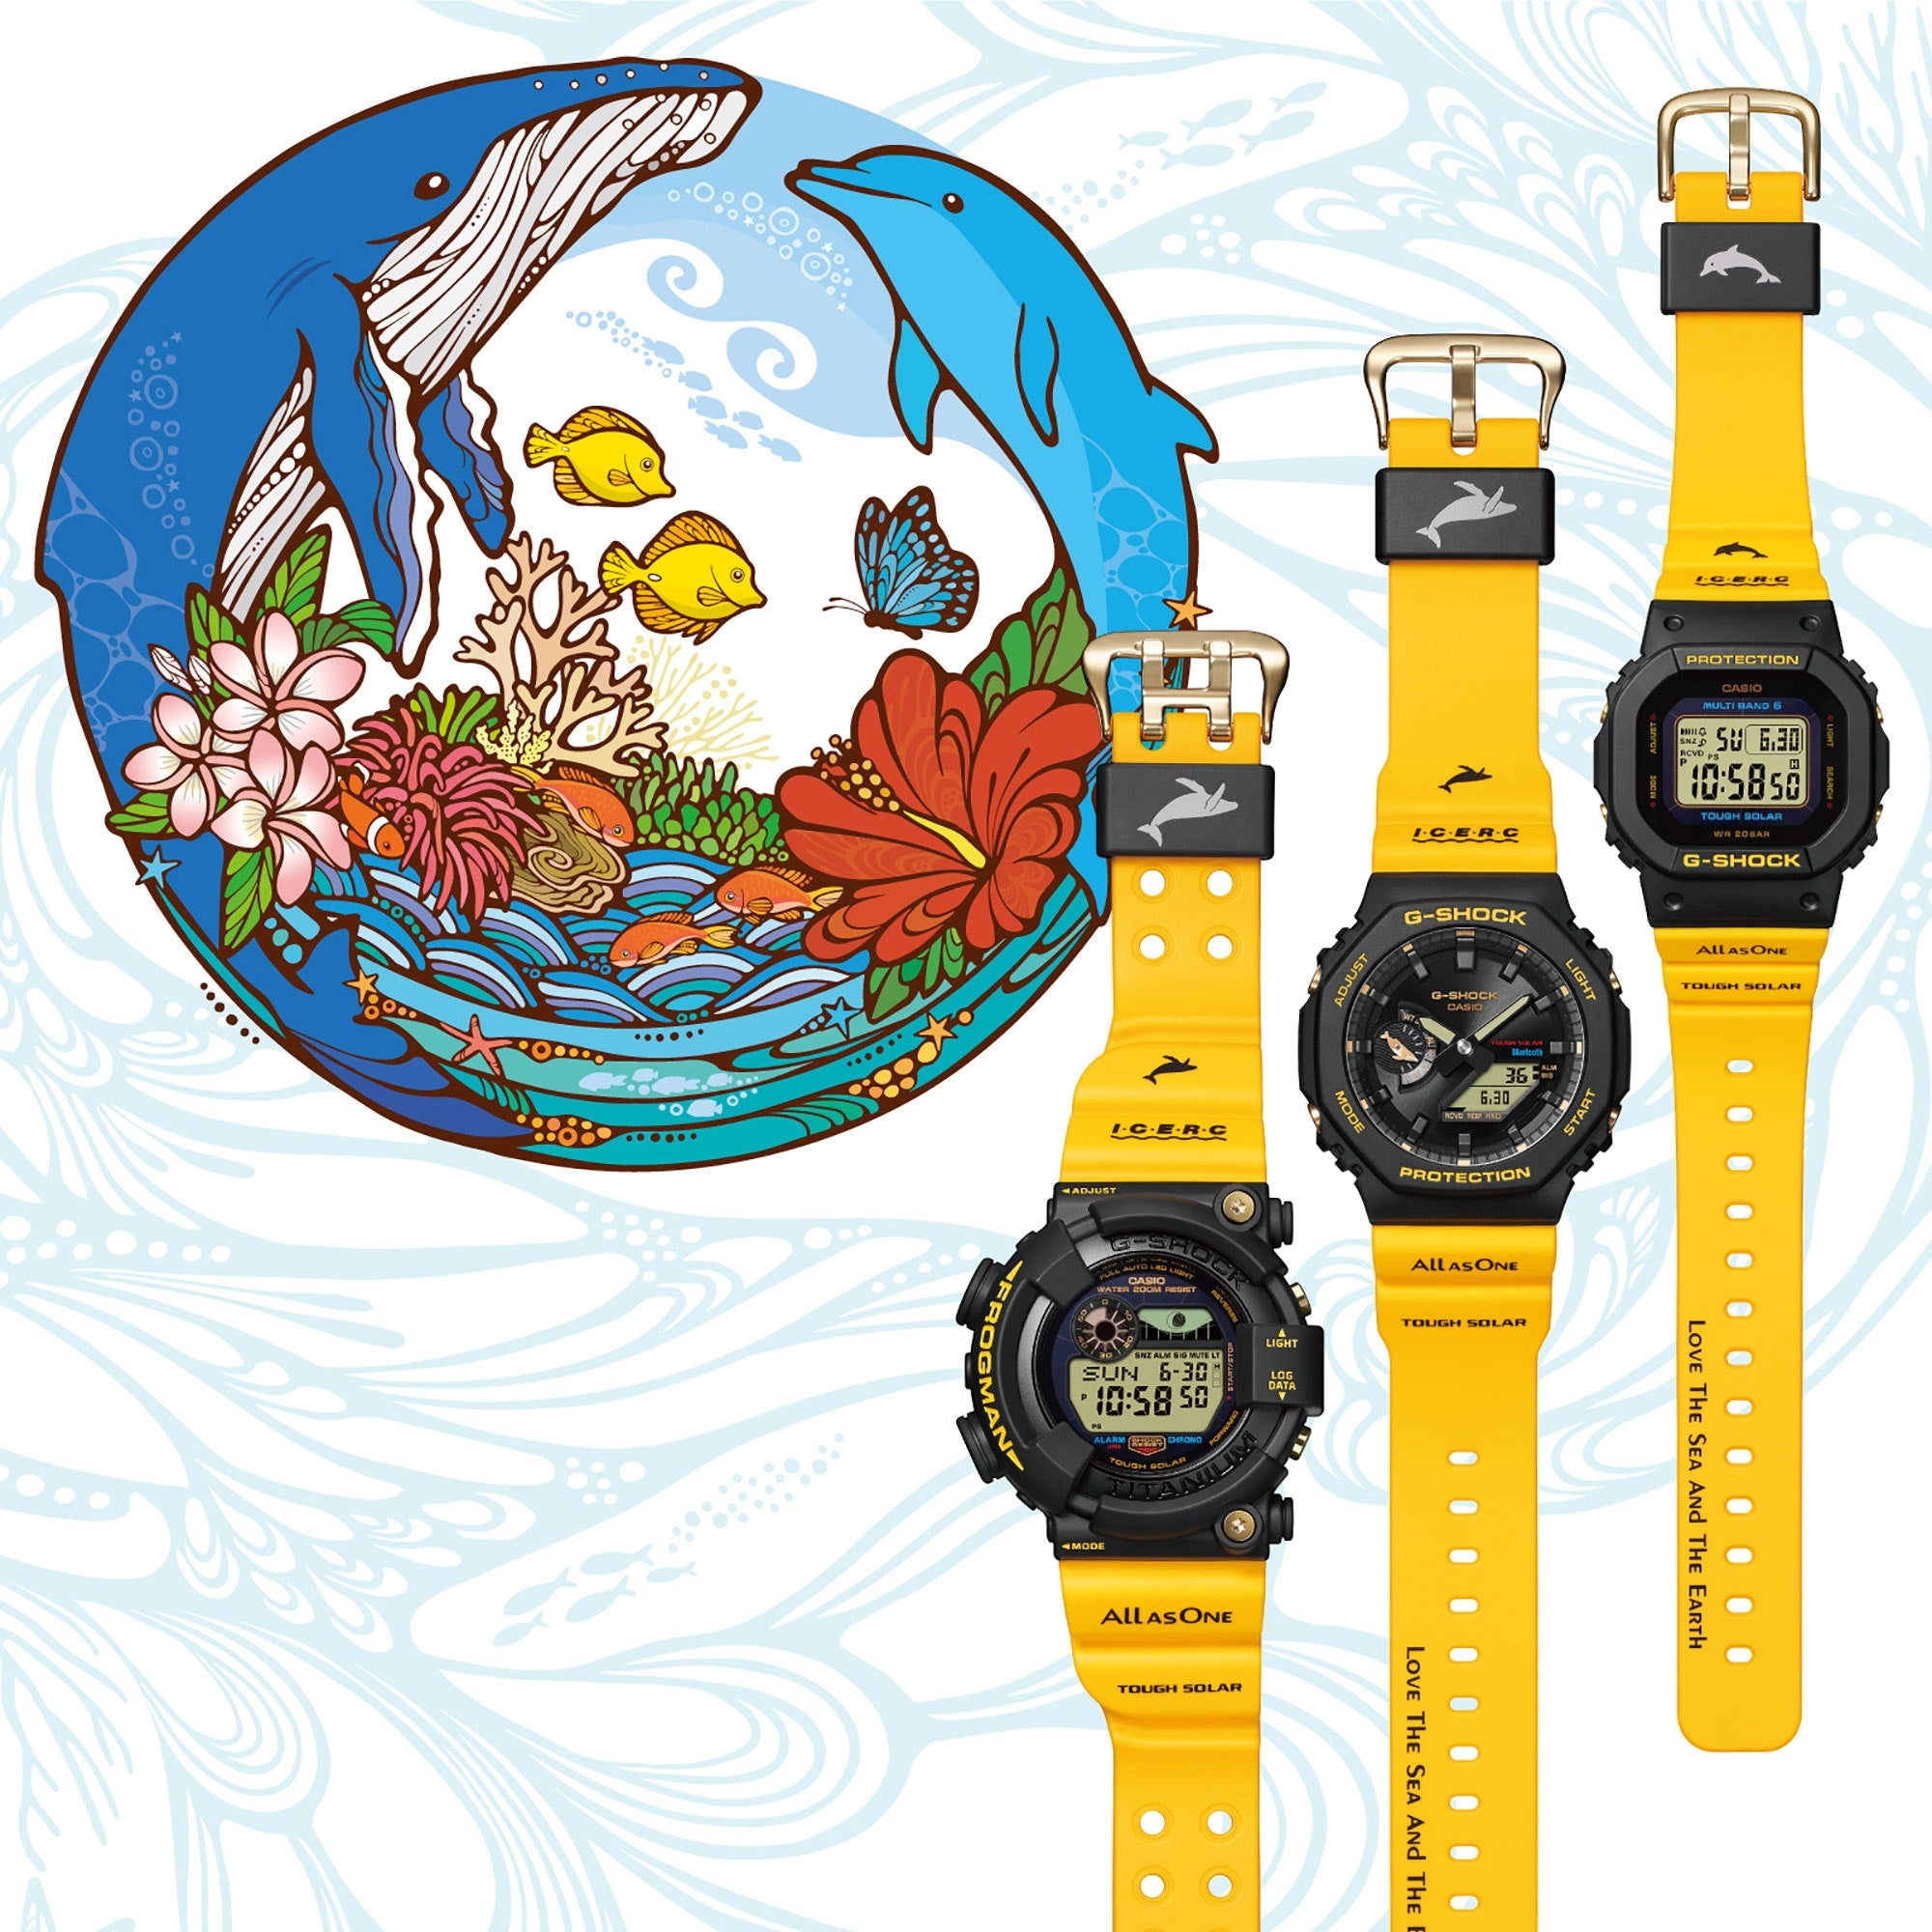 CASIOイルクジ G−SHOCK イルカ・クジラモデル - 腕時計(デジタル)